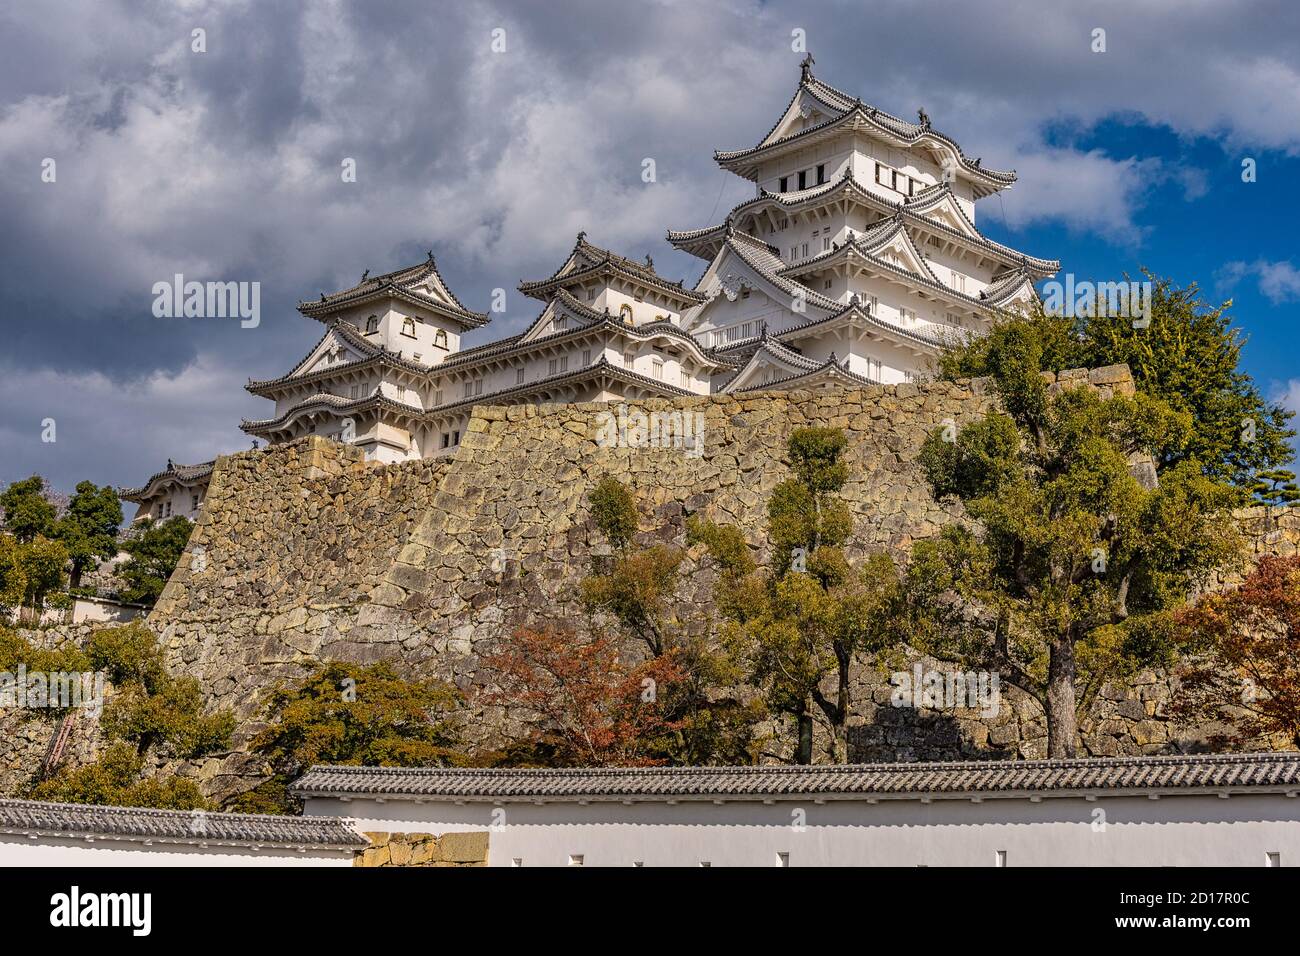 Magnifique château Himeji dans la ville Himeji dans la préfecture de Hyogo La région de Kansai au Japon Banque D'Images